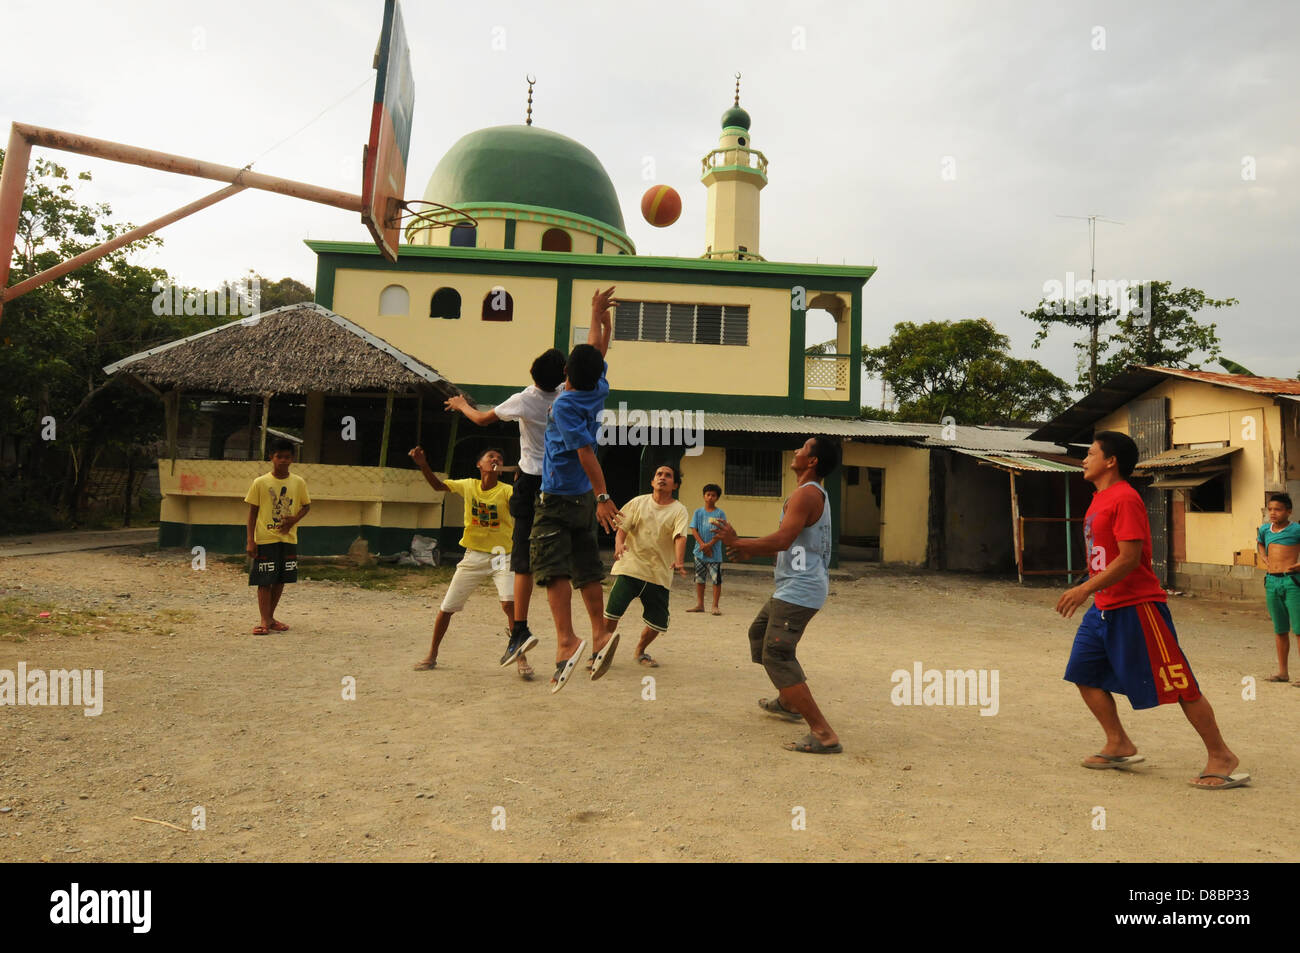 Des hommes jouer au basket-ball à l'arrière-cour près d'une mosquée dans la ville côtière de Puerto Galera. L'île de Mindoro, Philippines Banque D'Images